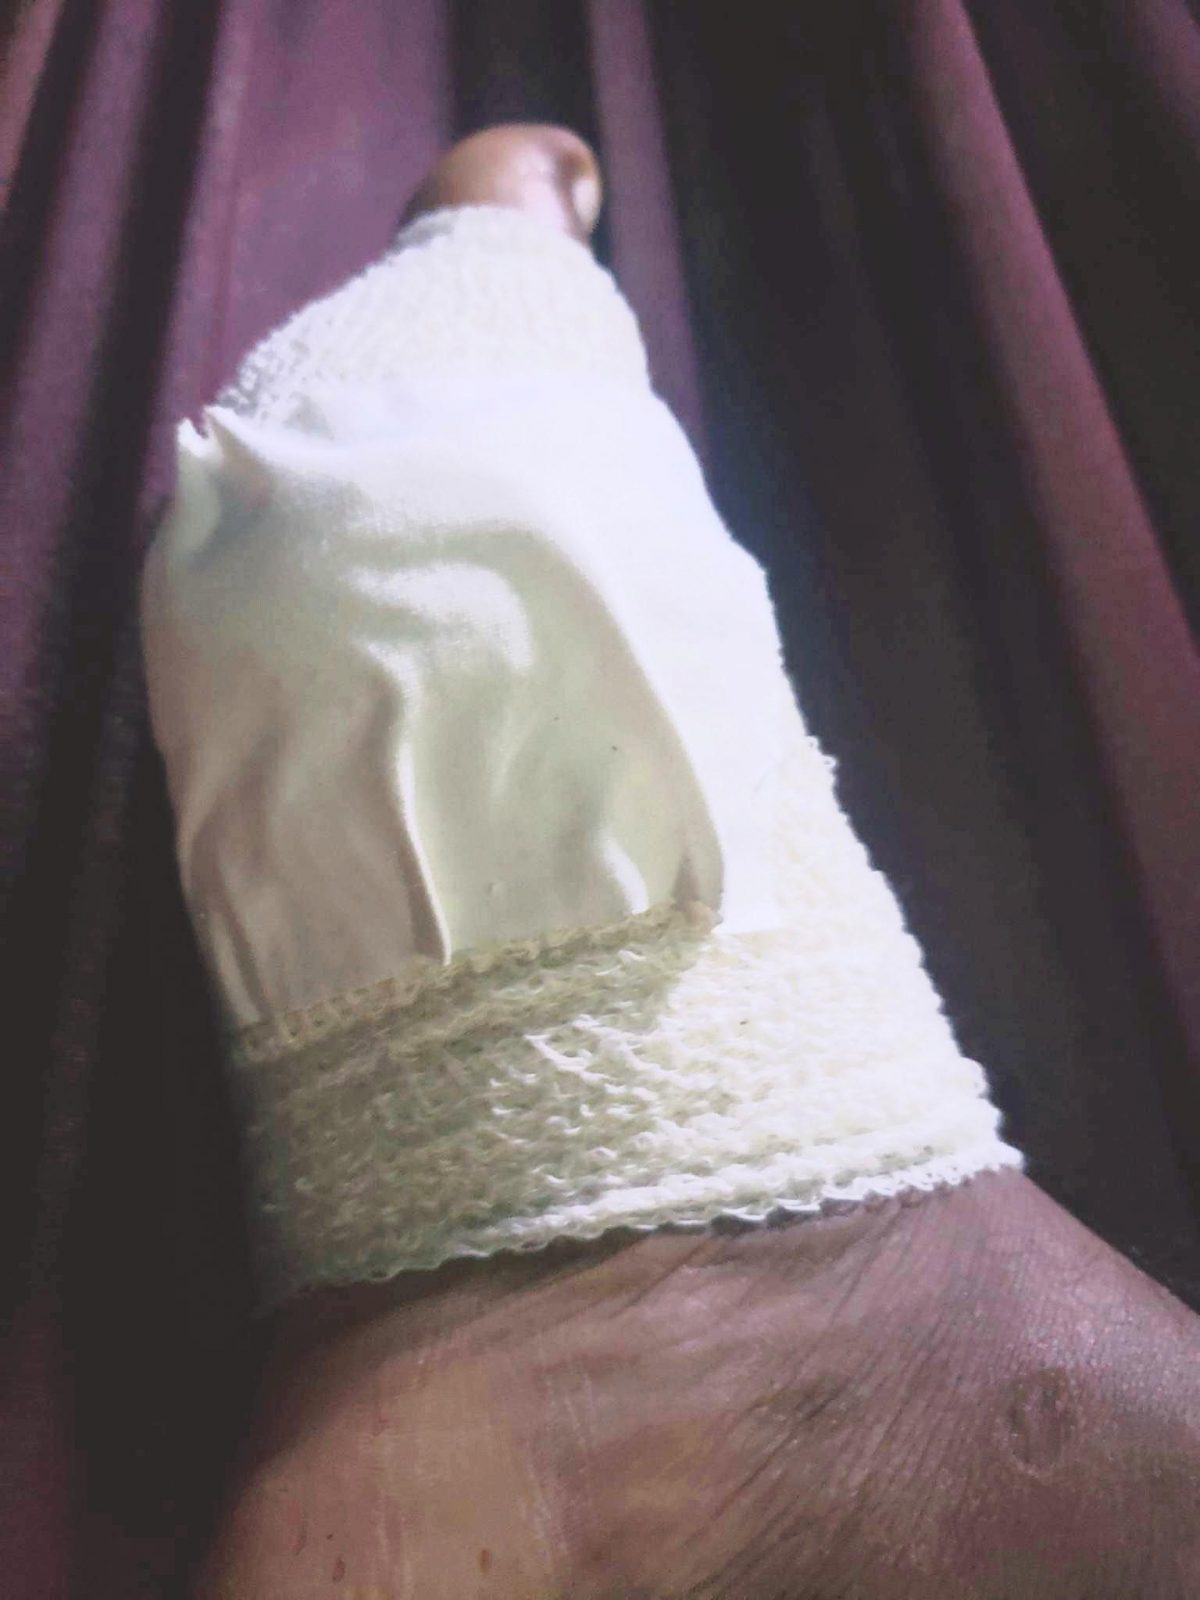 Ravindra Compton’s swollen foot in bandages 